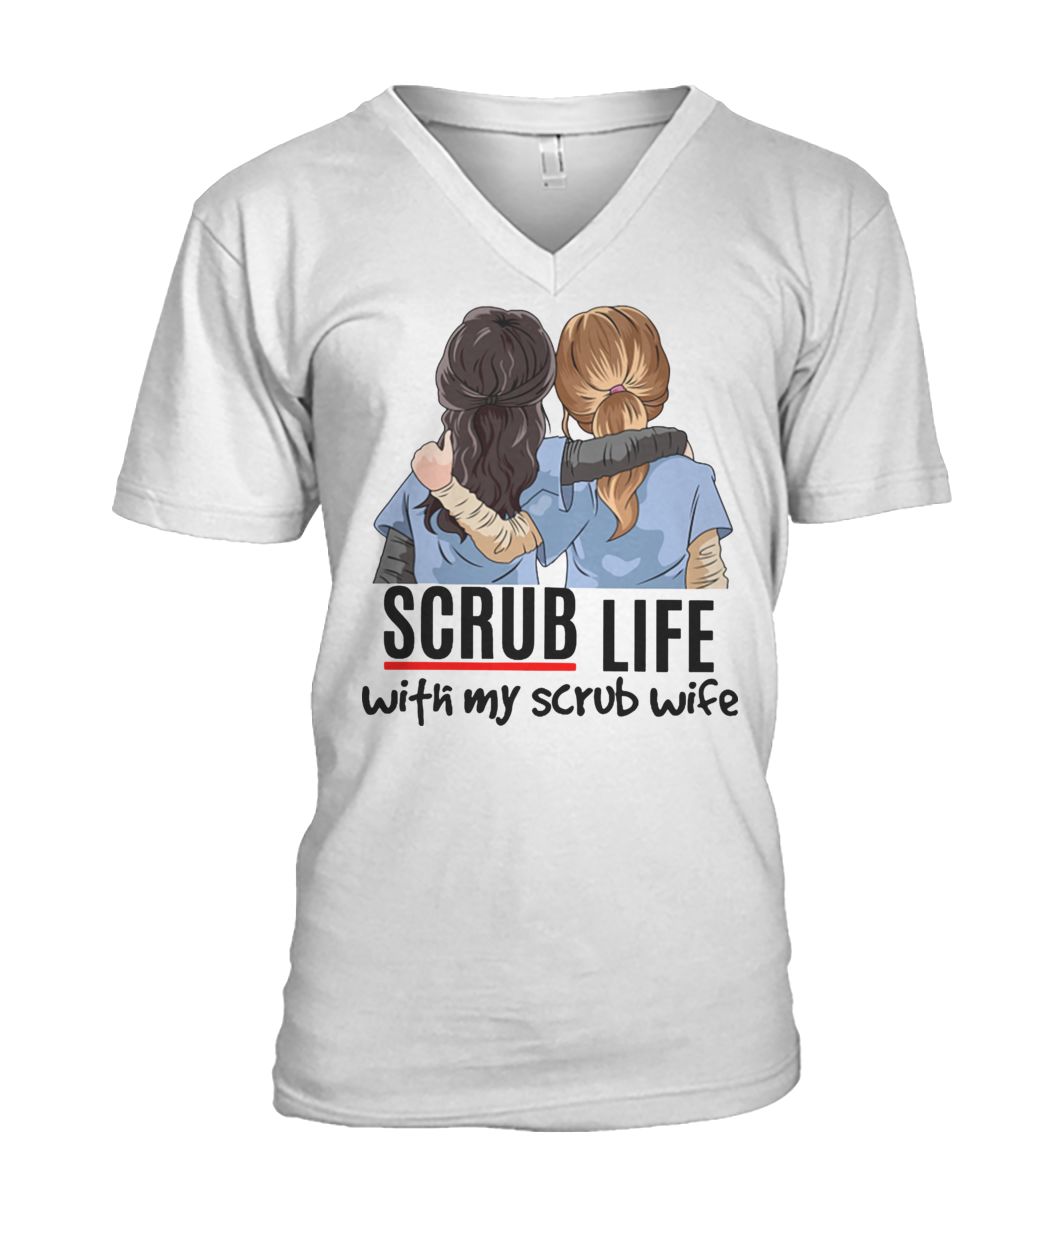 Nurse scrub life with my scrub wife mens v-neck